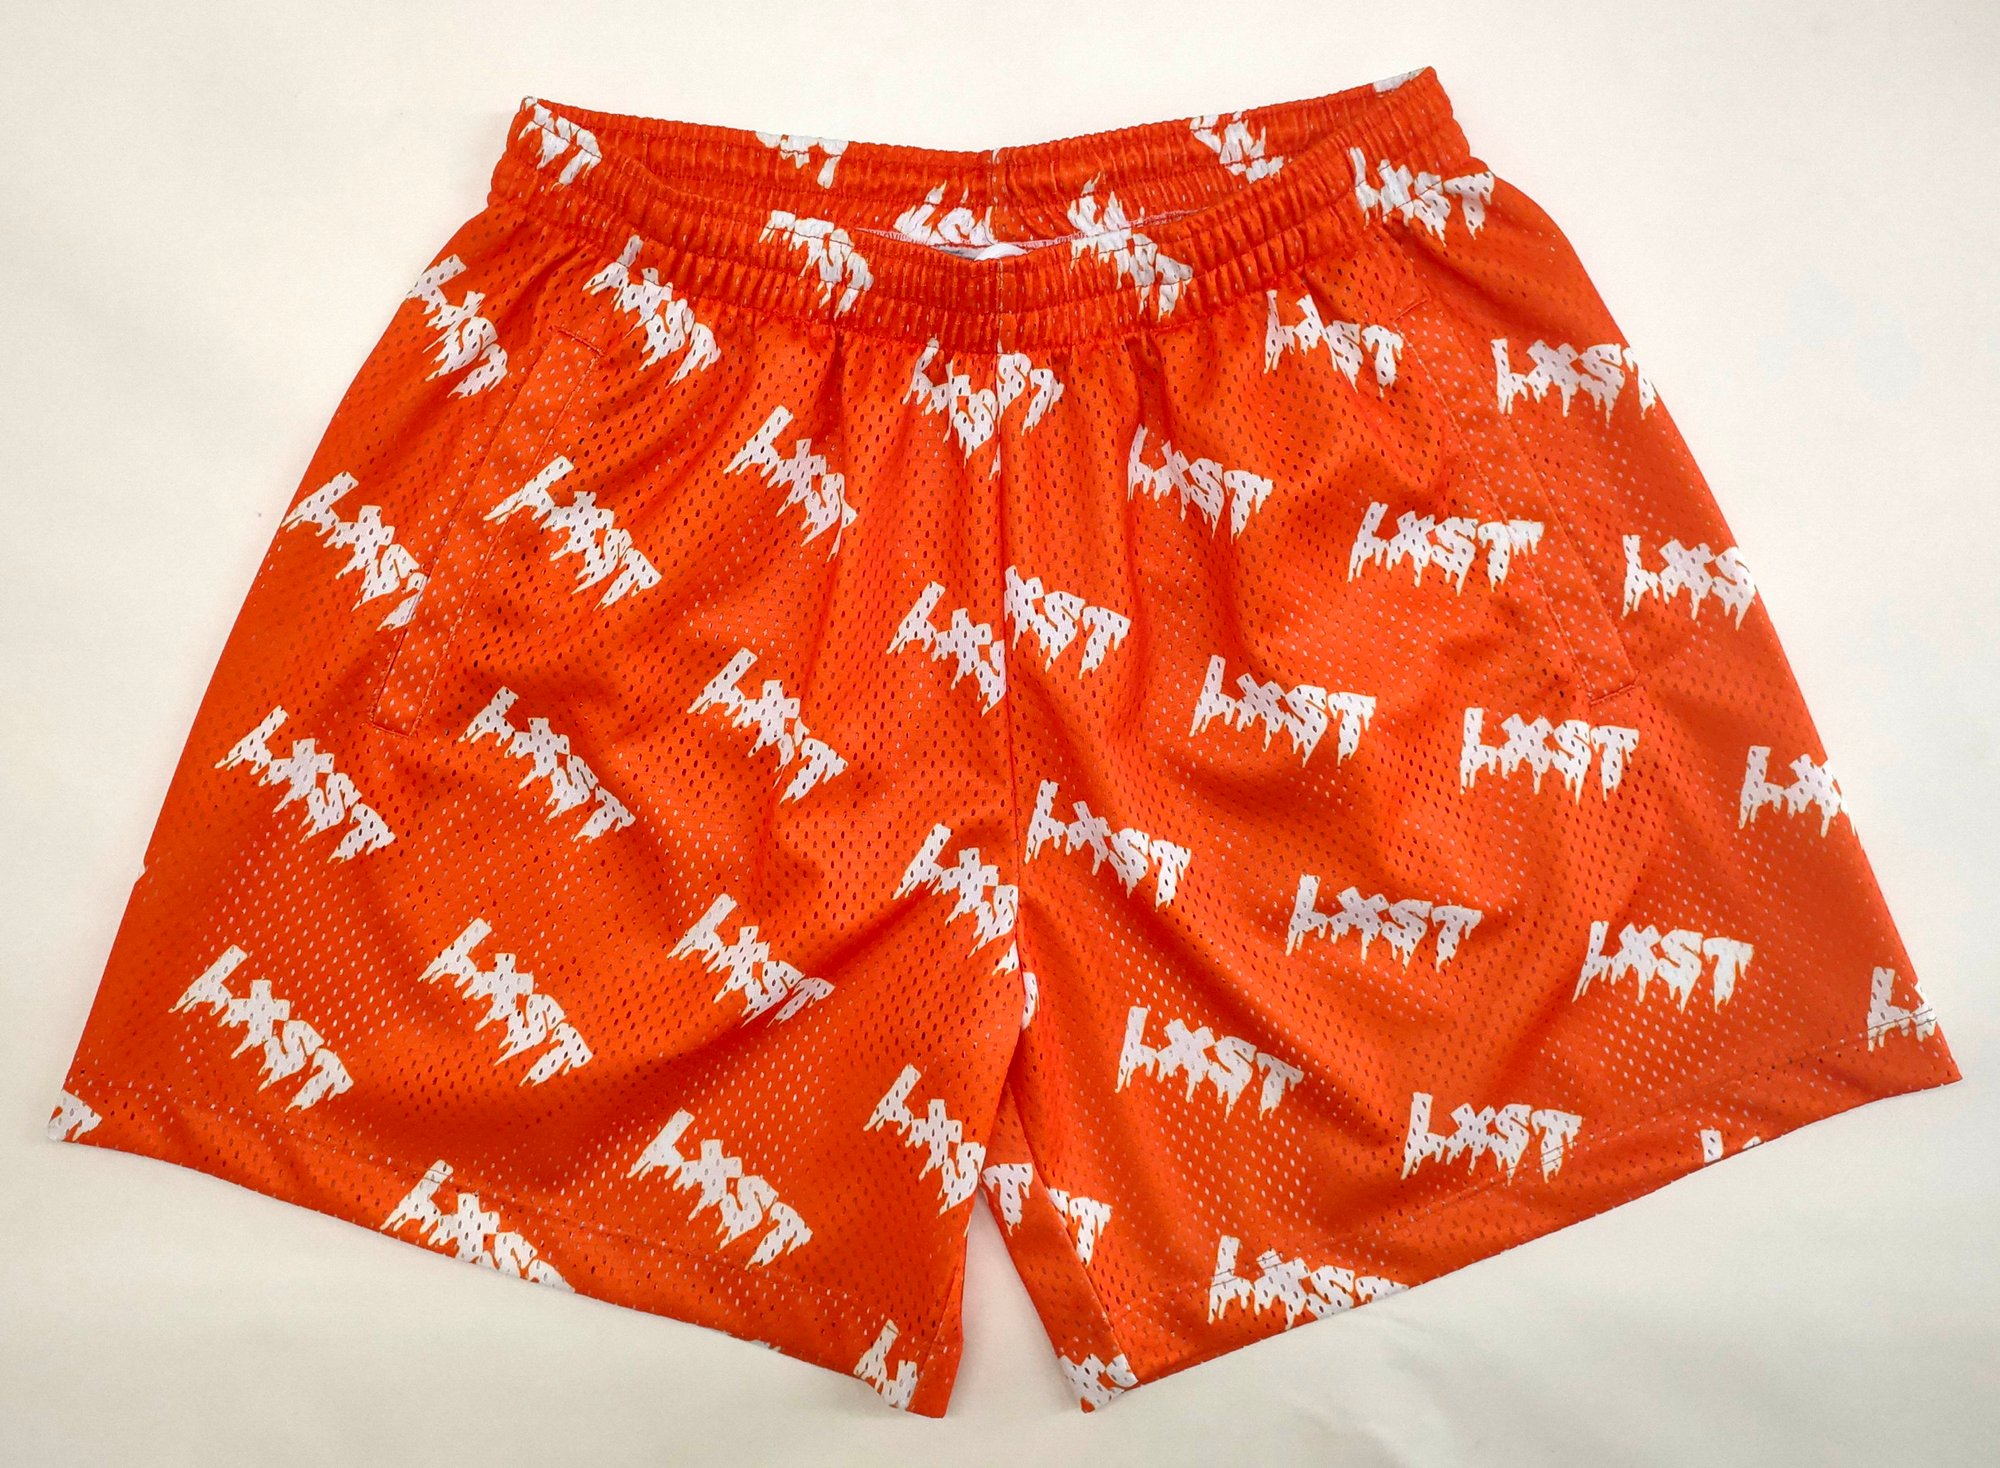 Drippy LXST Mesh Shorts (Orange)